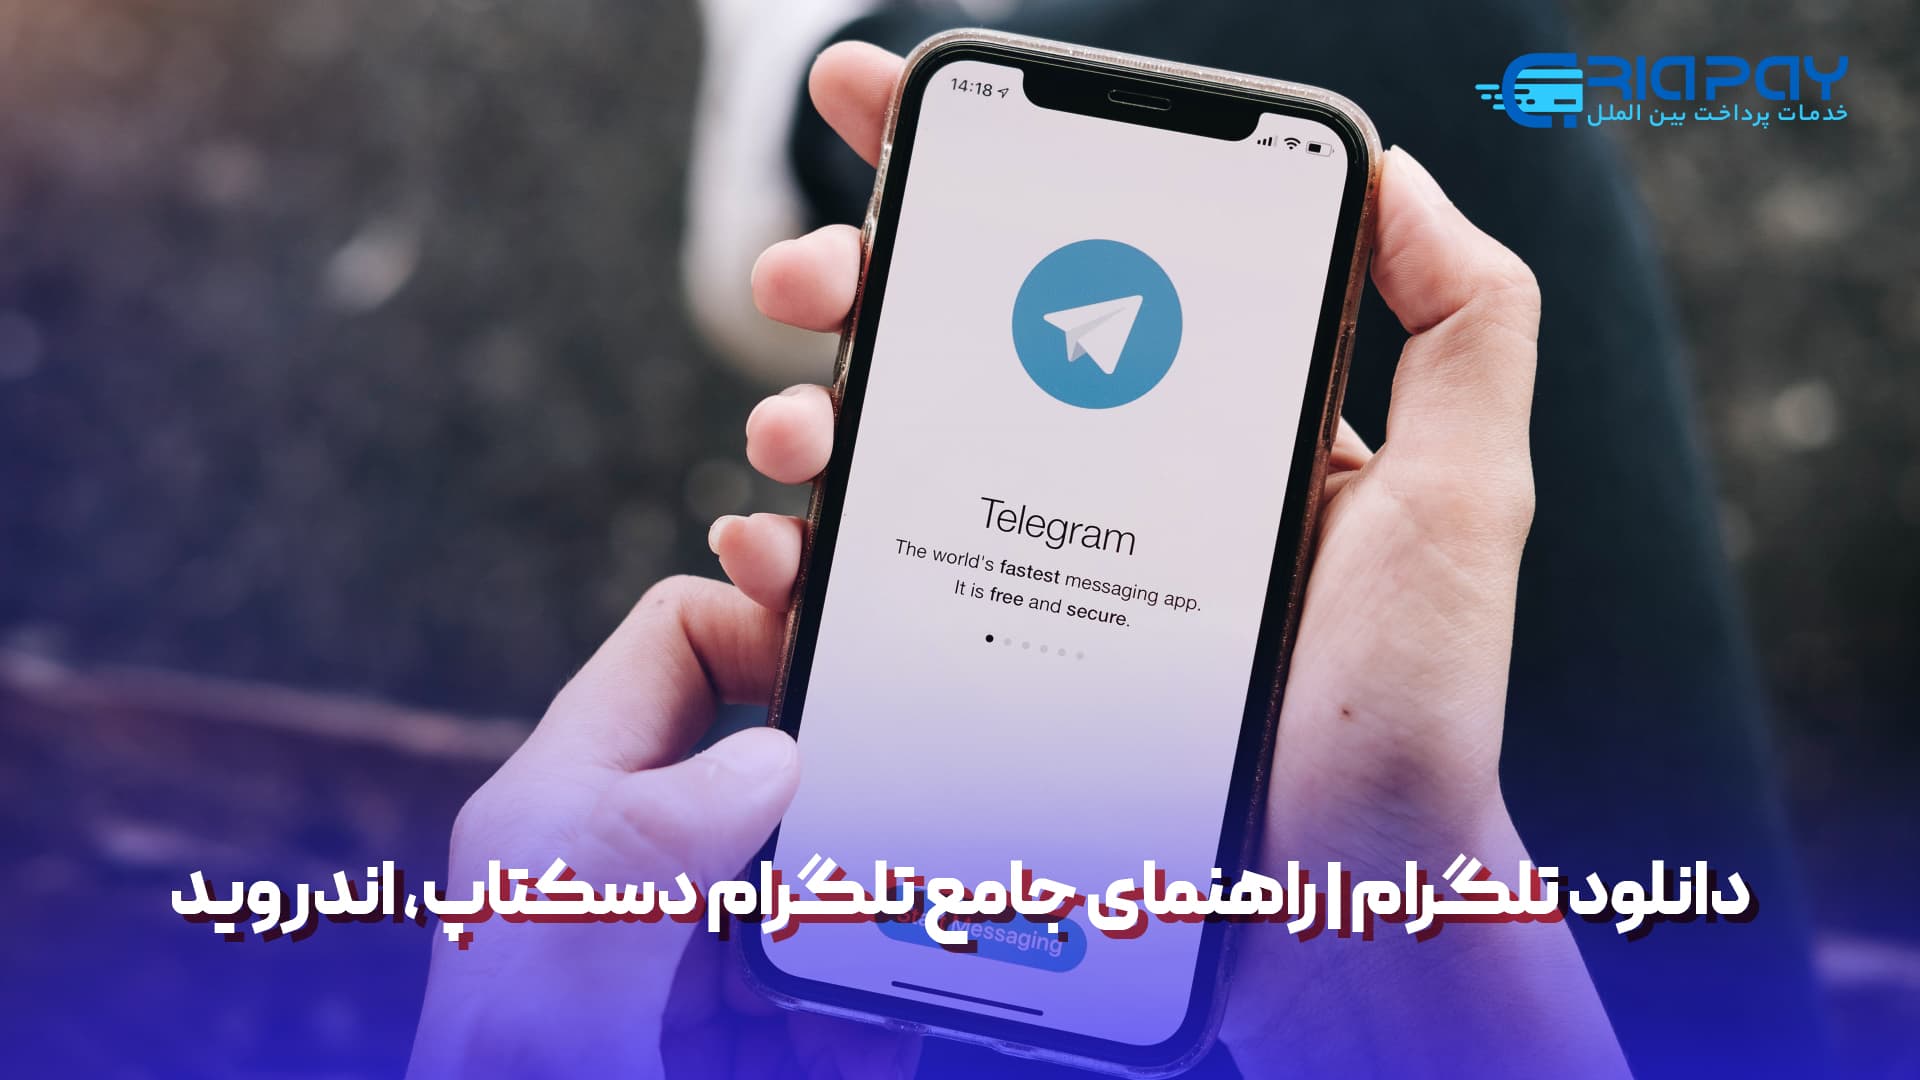 دانلود تلگرام; راهنمای جامع تلگرام دسکتاپ، اندروید و iOS